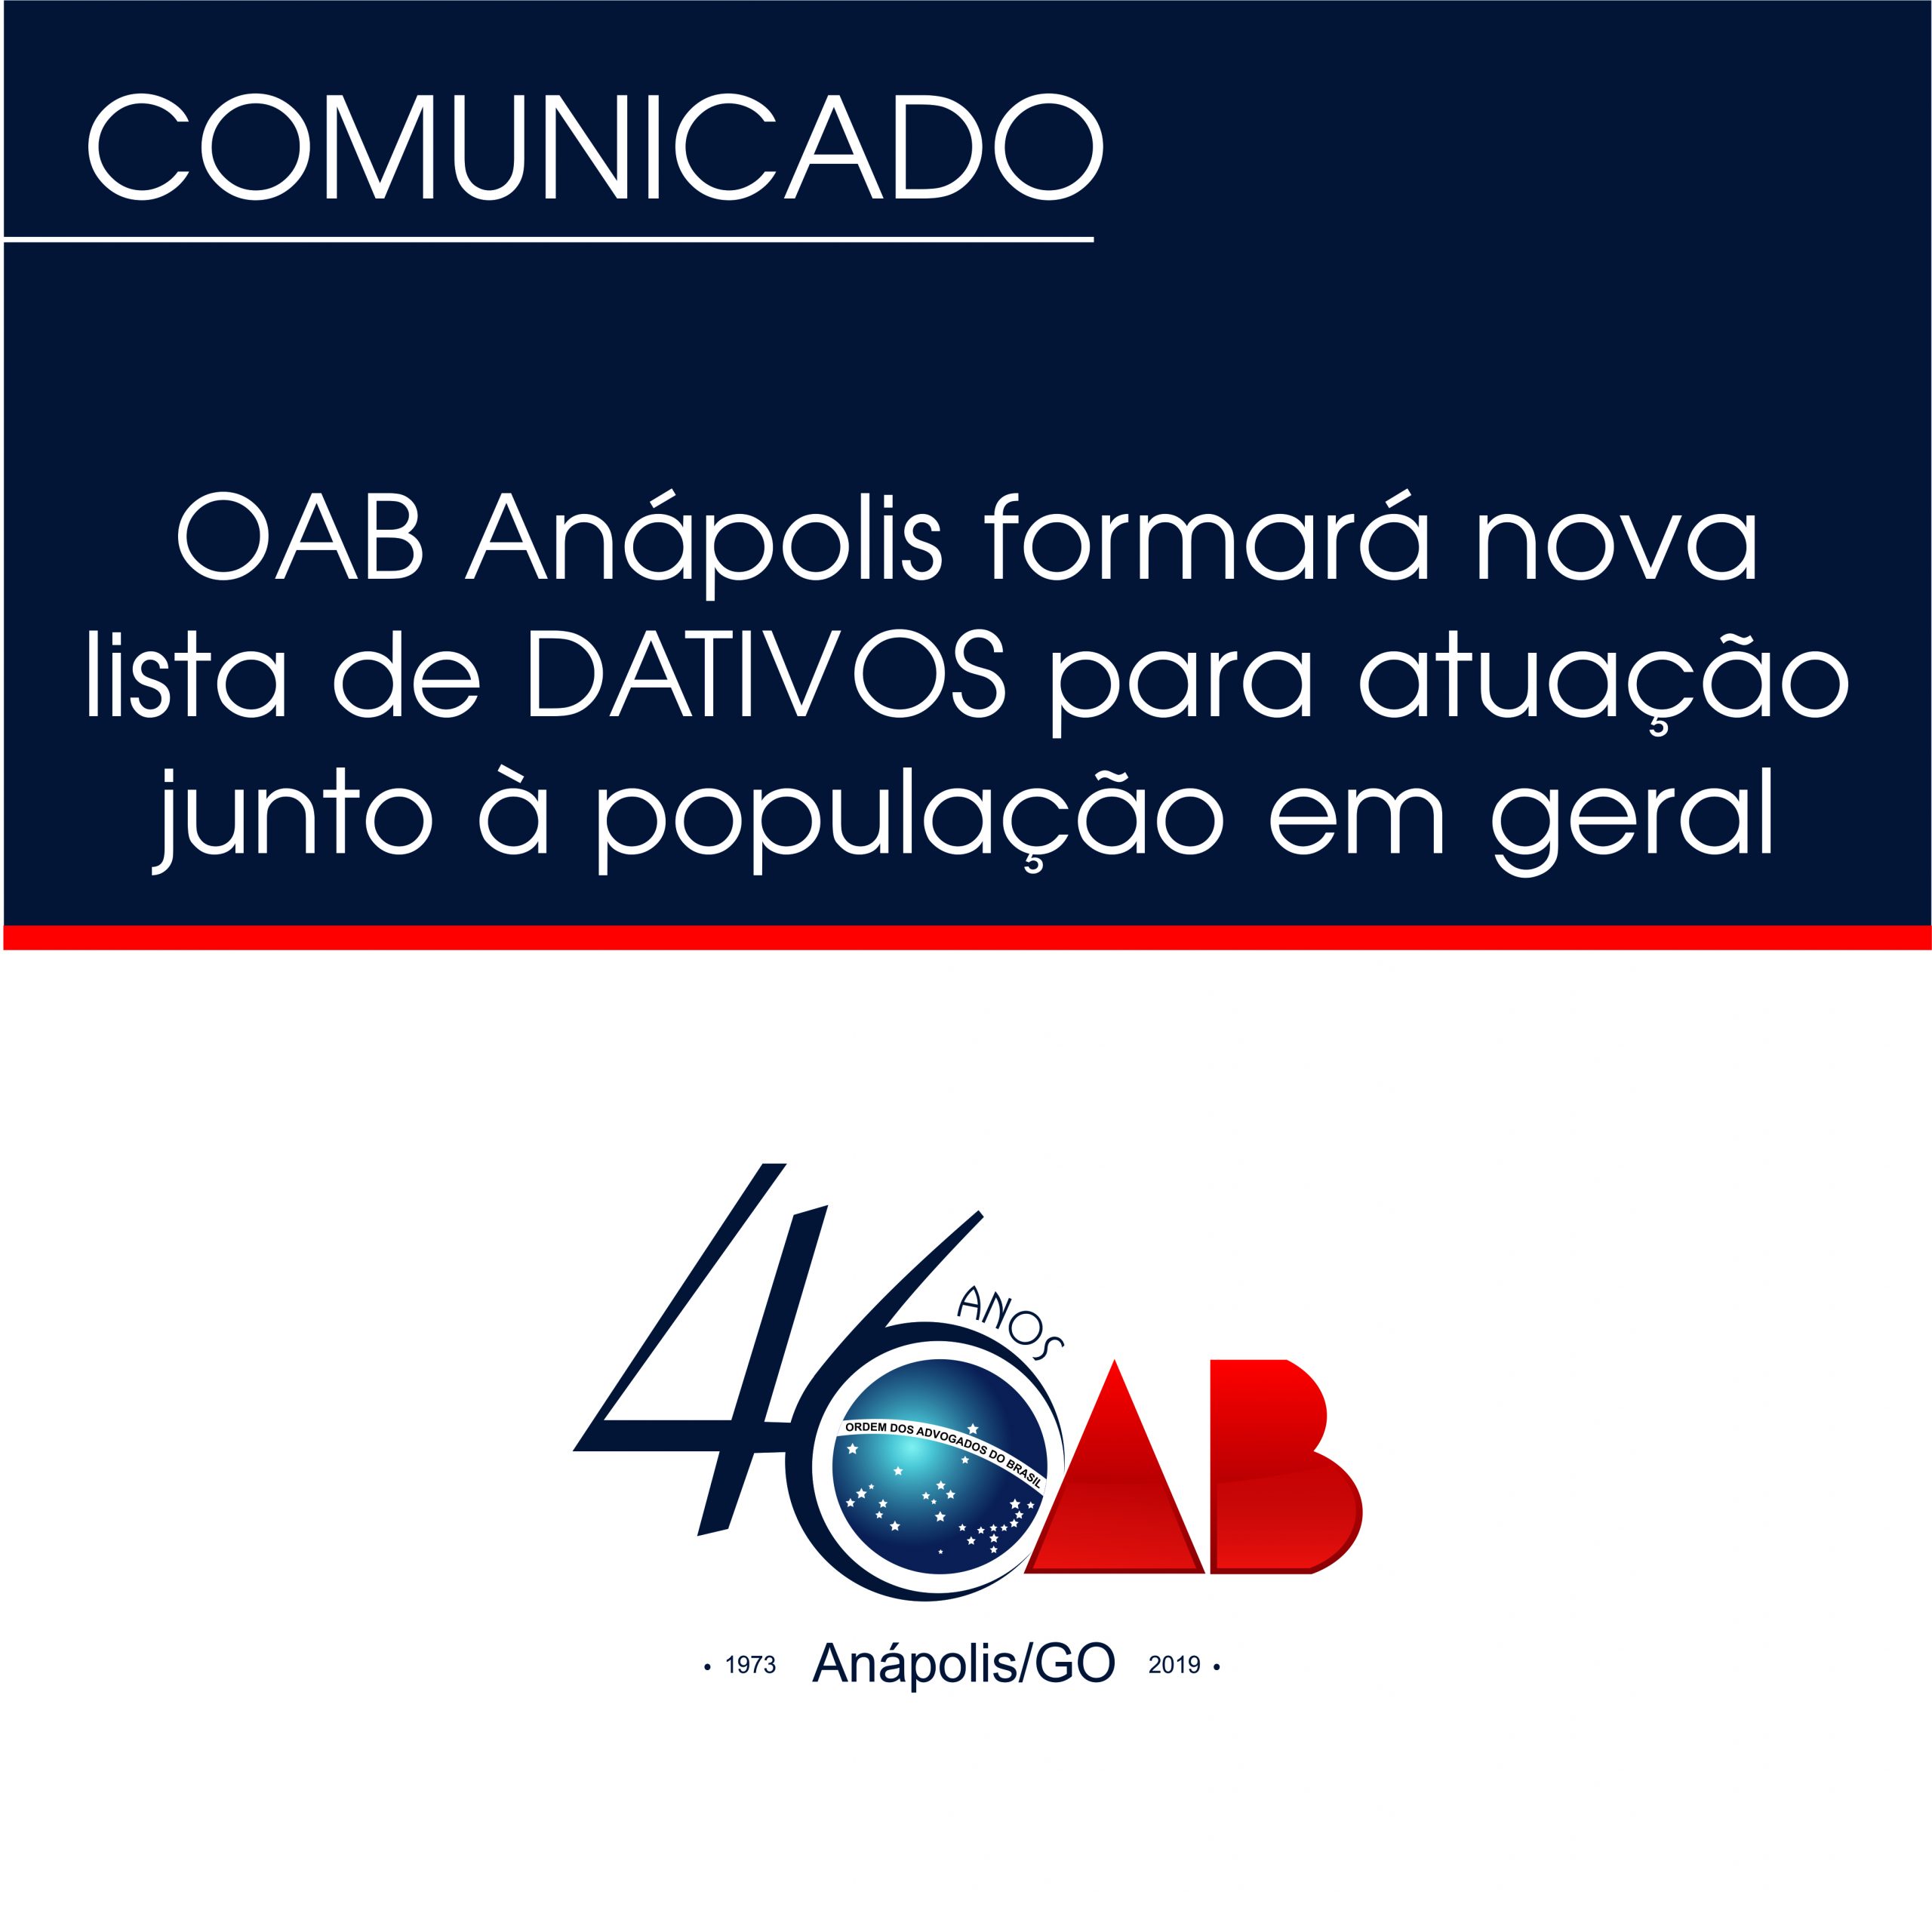 OAB Anápolis formará nova lista de DATIVOS para atuação junto à população em geral